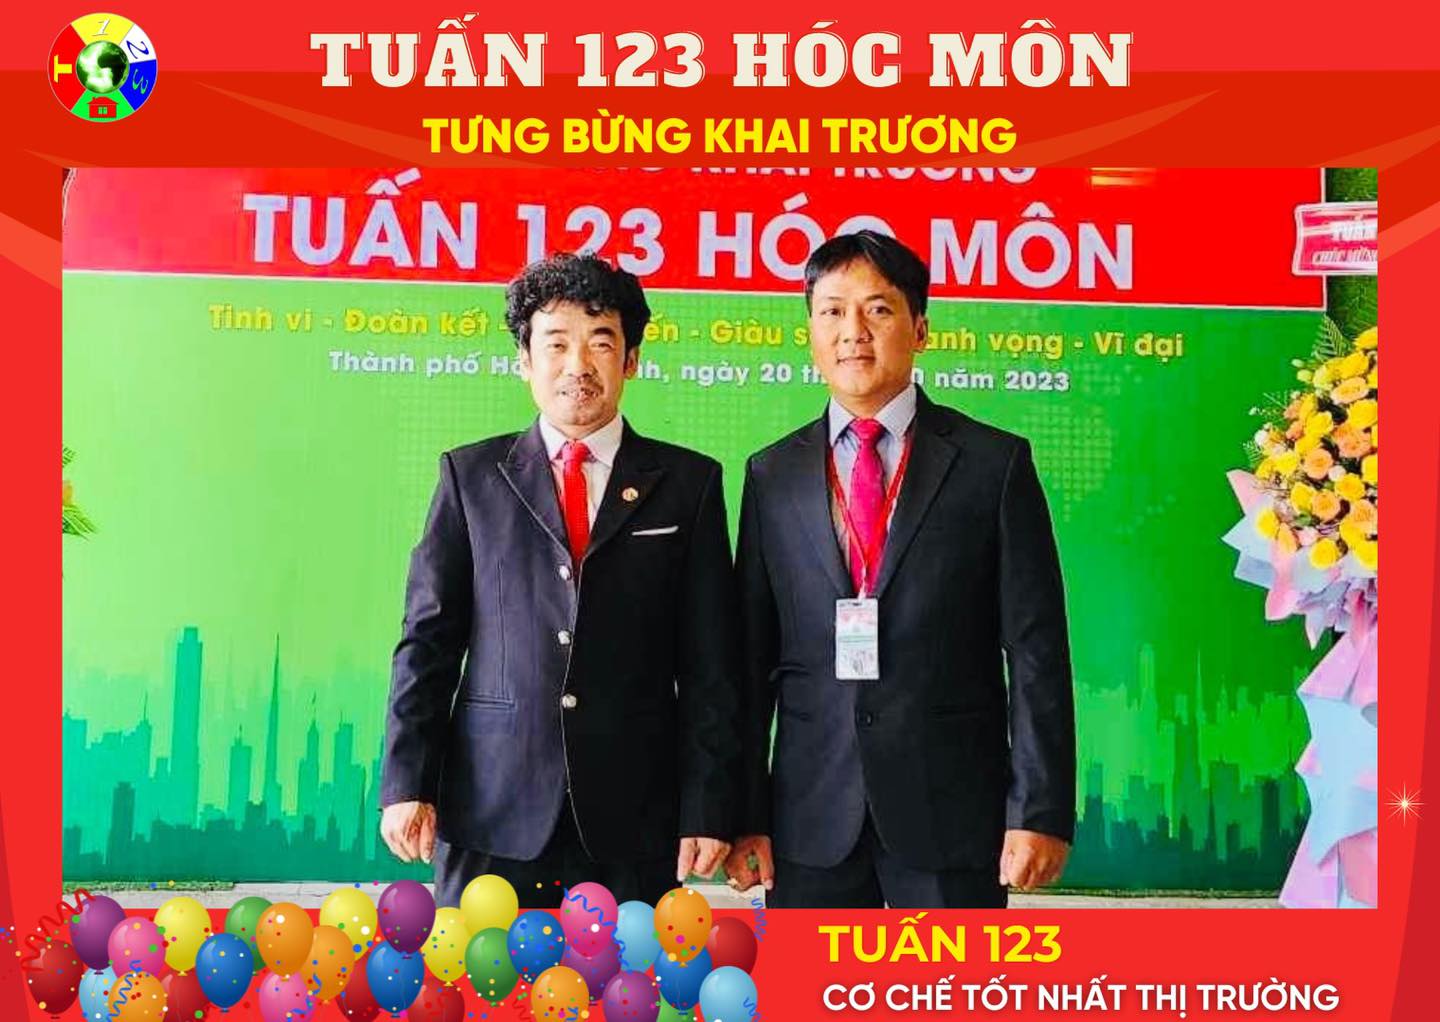 Chủ tịch Hội đồng quản trị - Ông Phạm Anh Tuấn (bên trái) và Giám đốc điều hành Tuấn 123 Hóc Môn - Ông Đặng Vũ (bên phải).